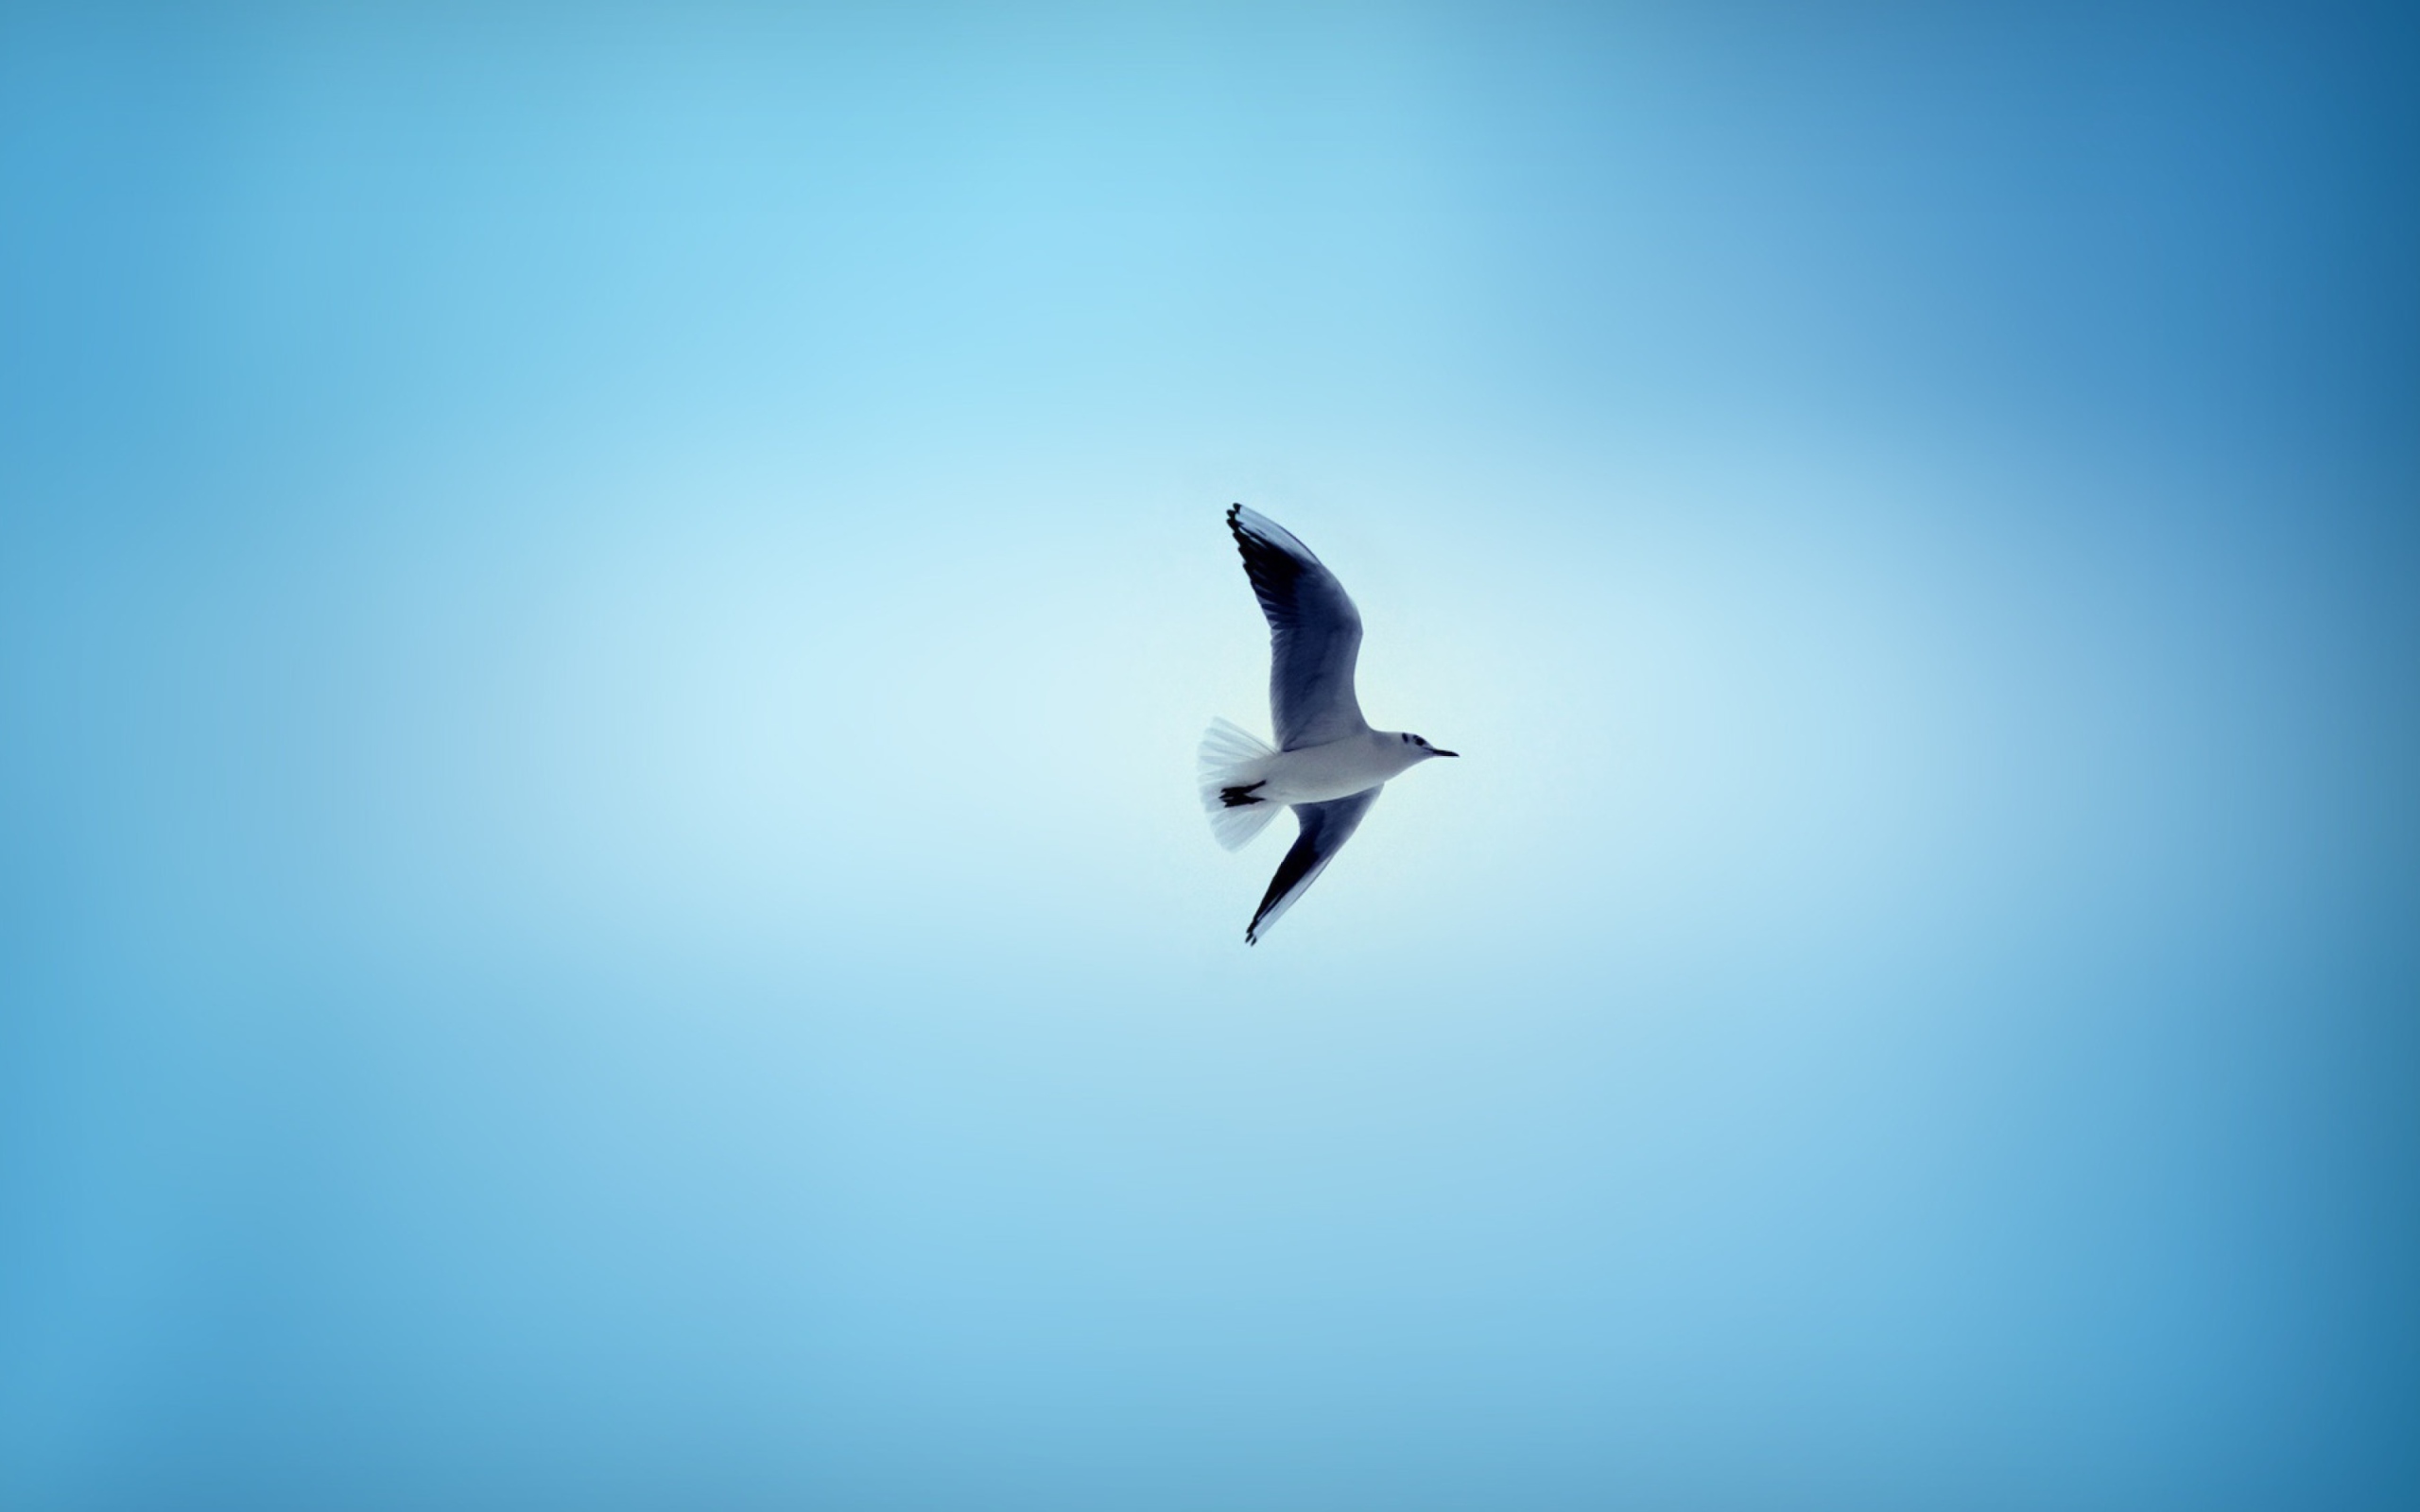 Heaven bird. Птицы в небе. Птицы на голубом фоне. Птица в полете. Птицы на фоне неба.